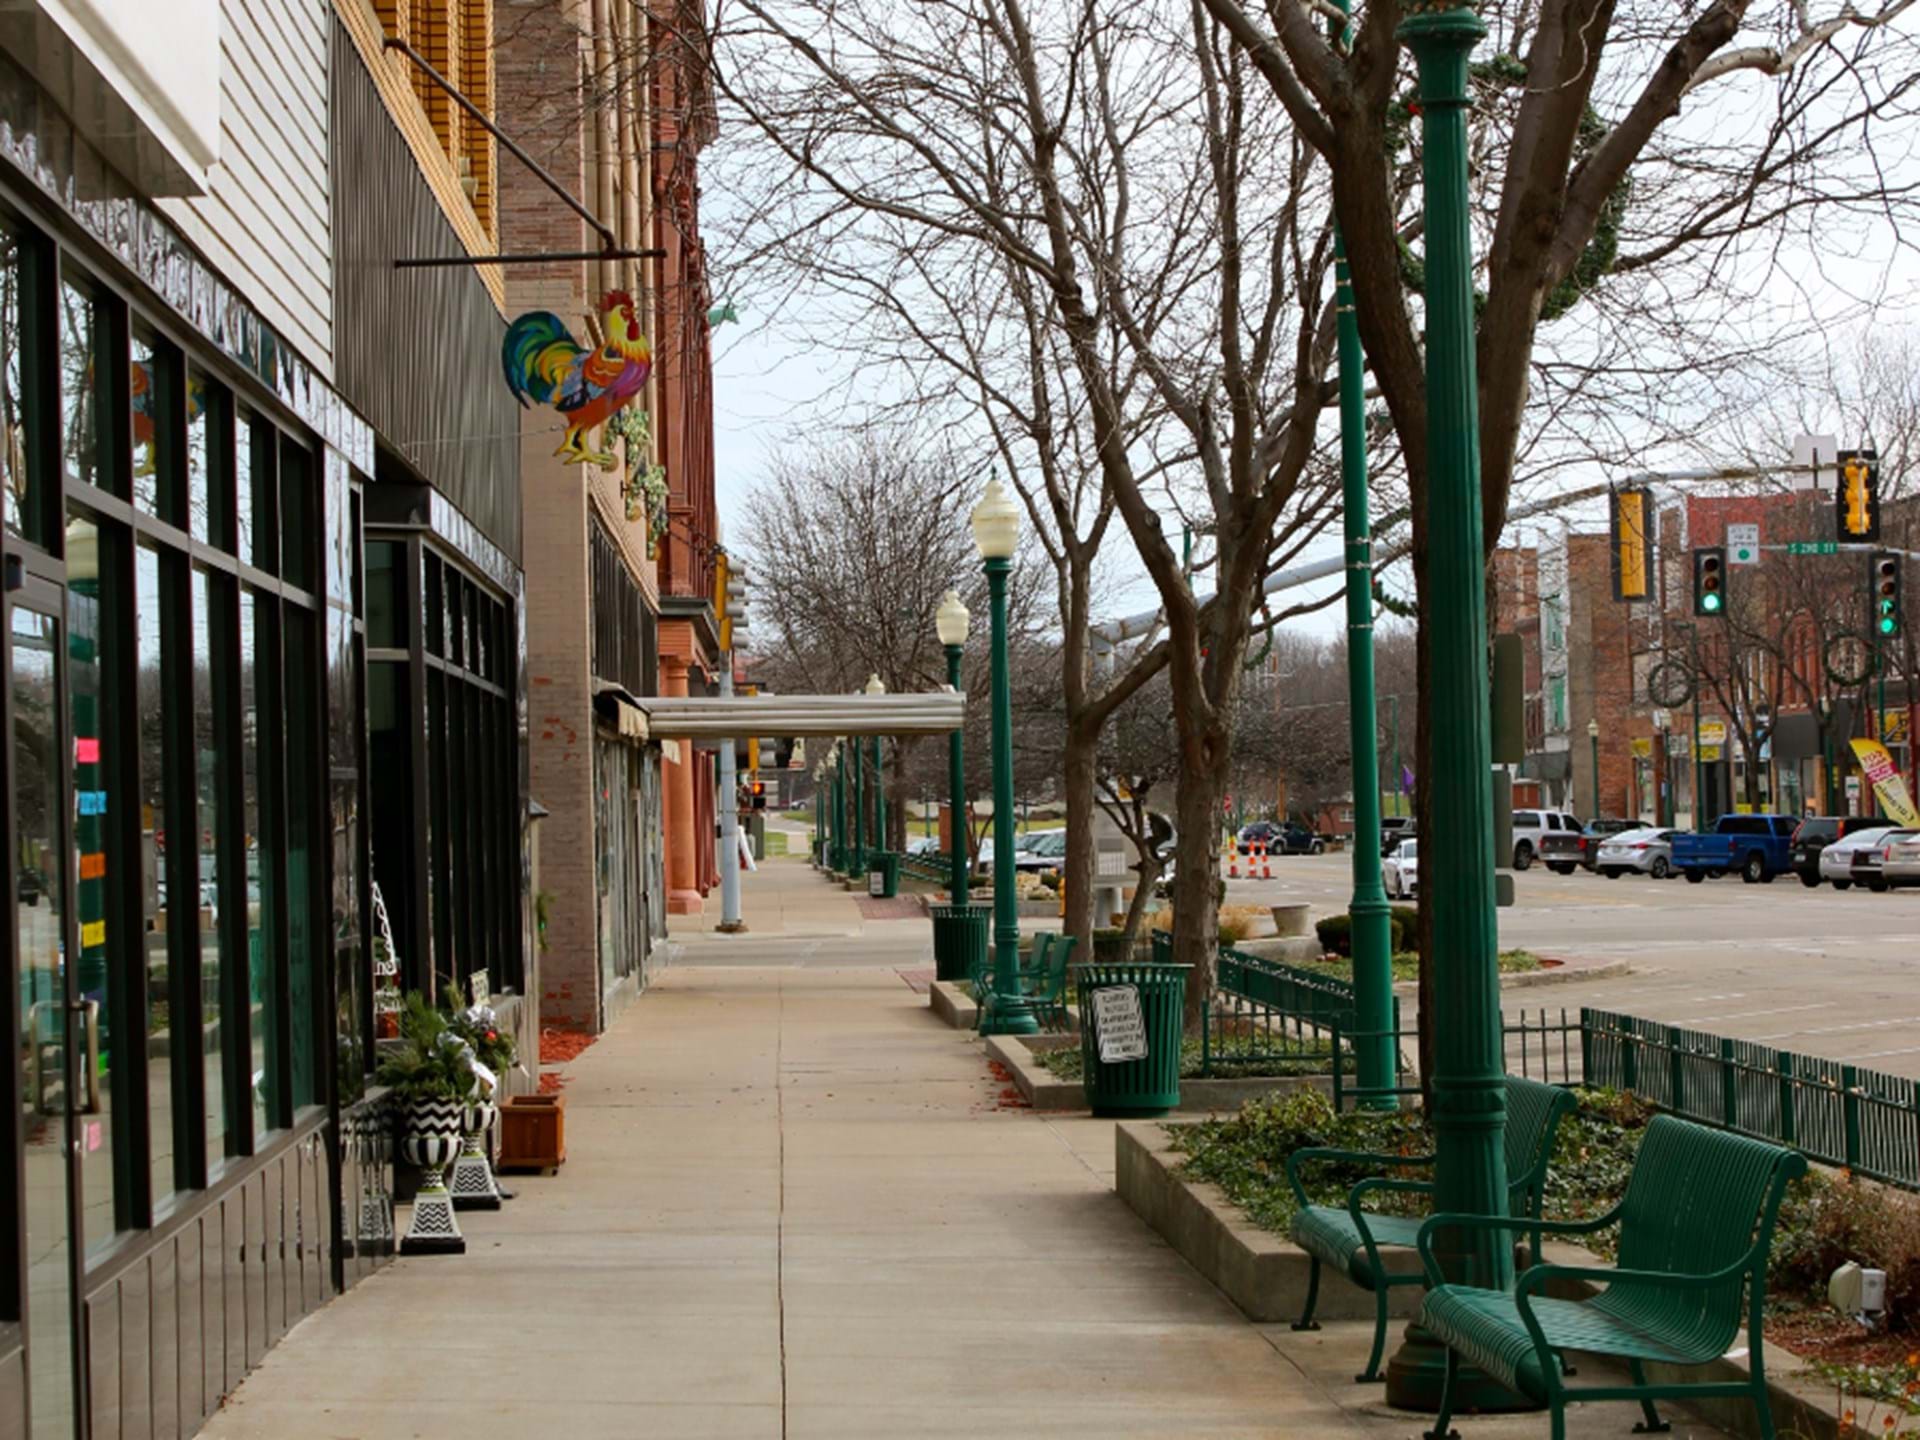 Sidewalks at Downtown Clinton, Iowa